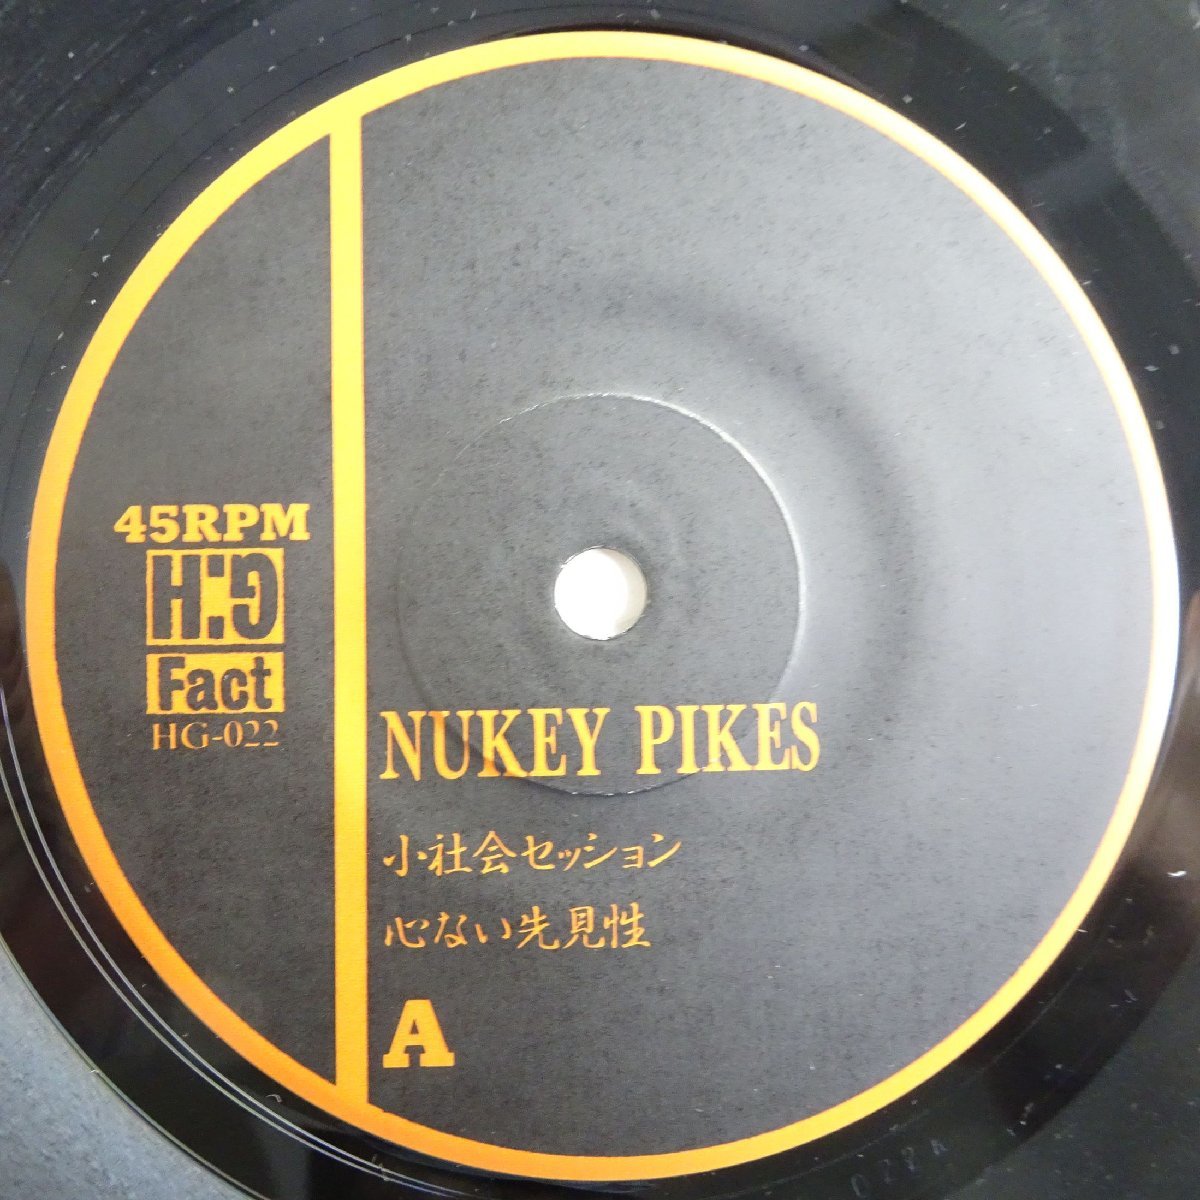 10016988;【国内盤/7inch】Nukey Pikes / Citizen Fish / Nukey Pikes / Skin Flinch_画像3